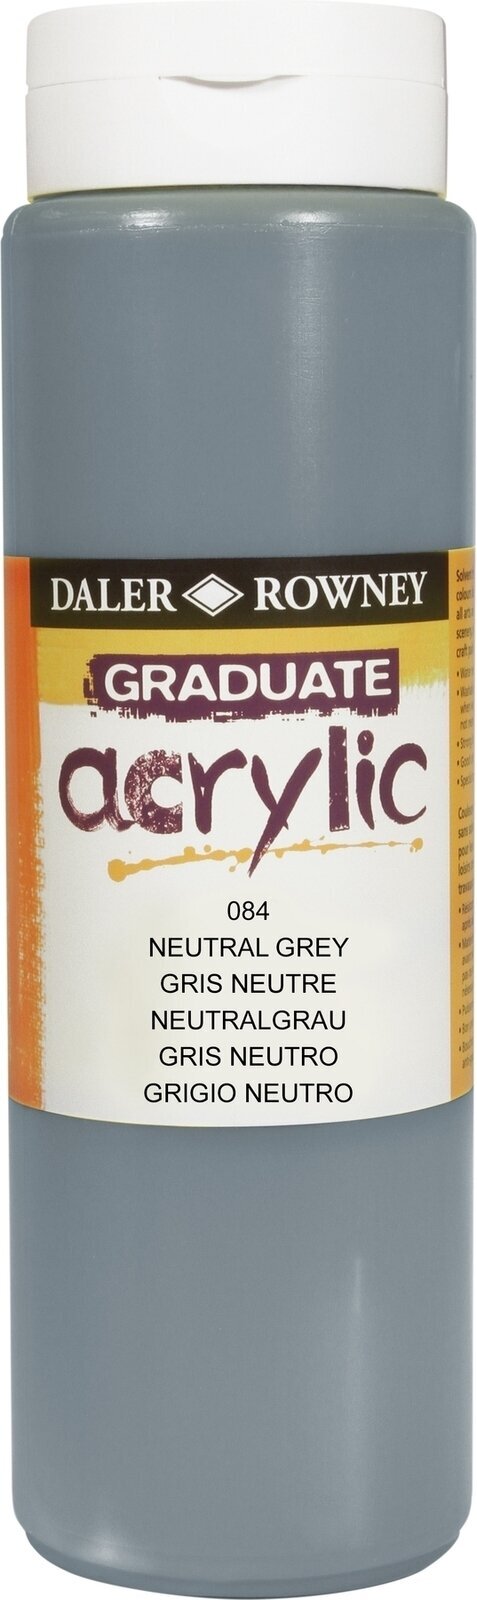 Akrylmaling Daler Rowney Graduate Akrylmaling Neutral Grey 500 ml 1 stk.